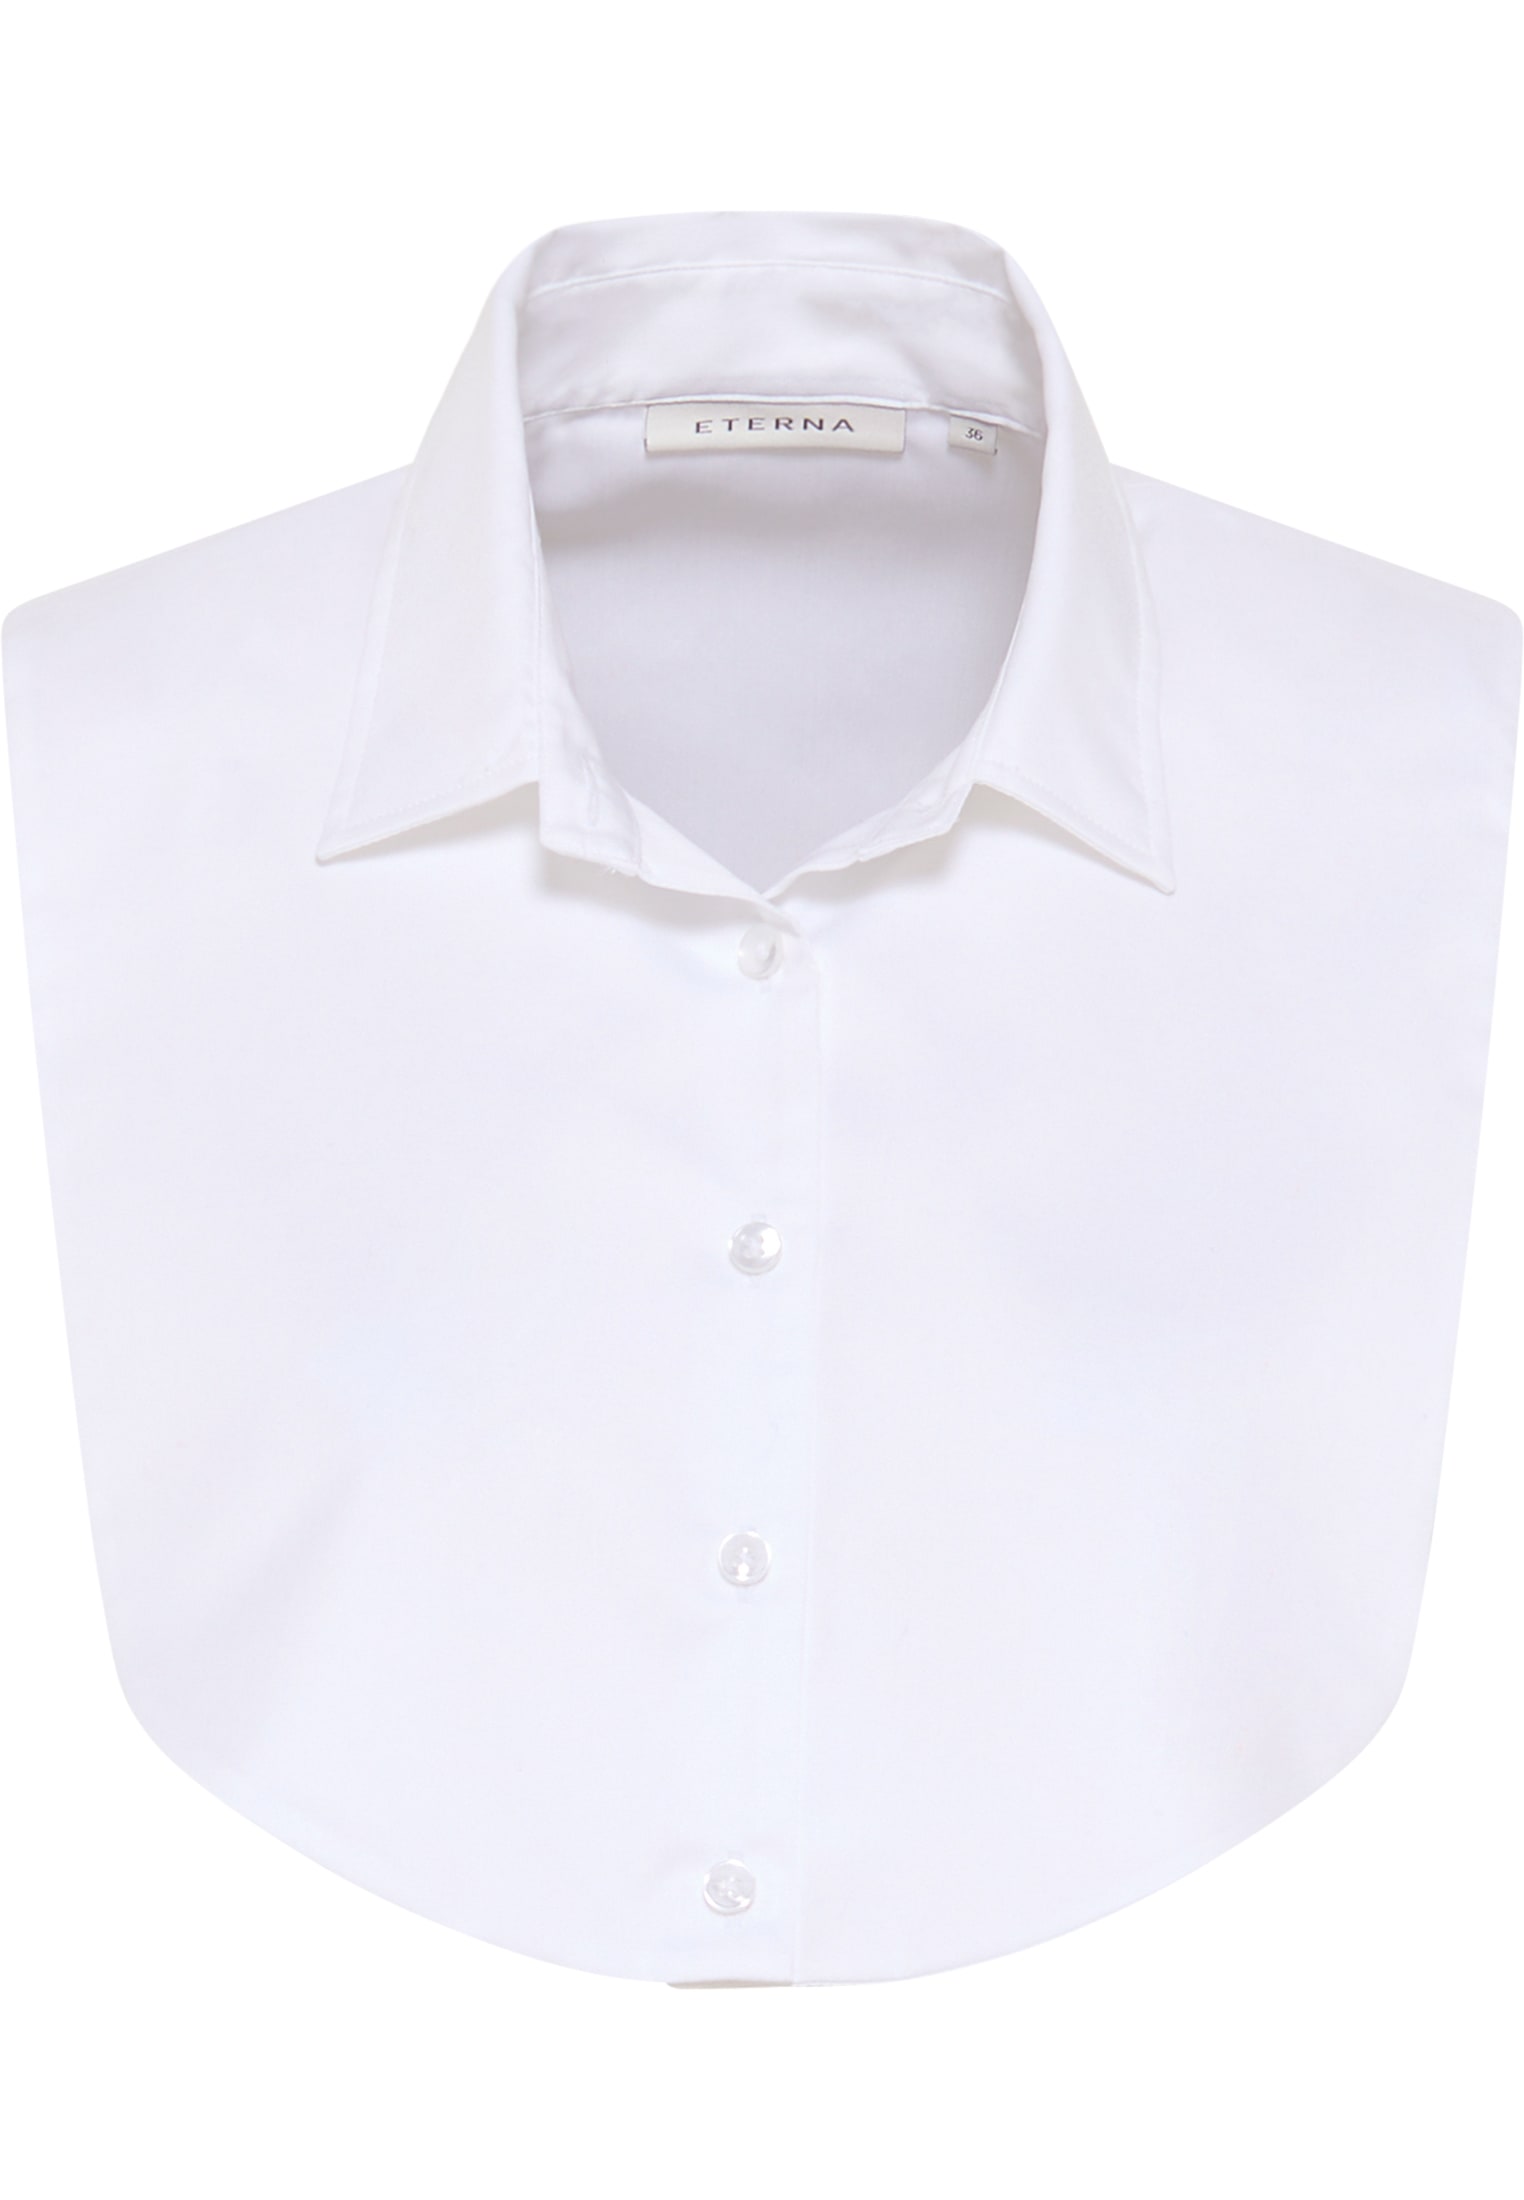 Satin Shirt in weiß unifarben